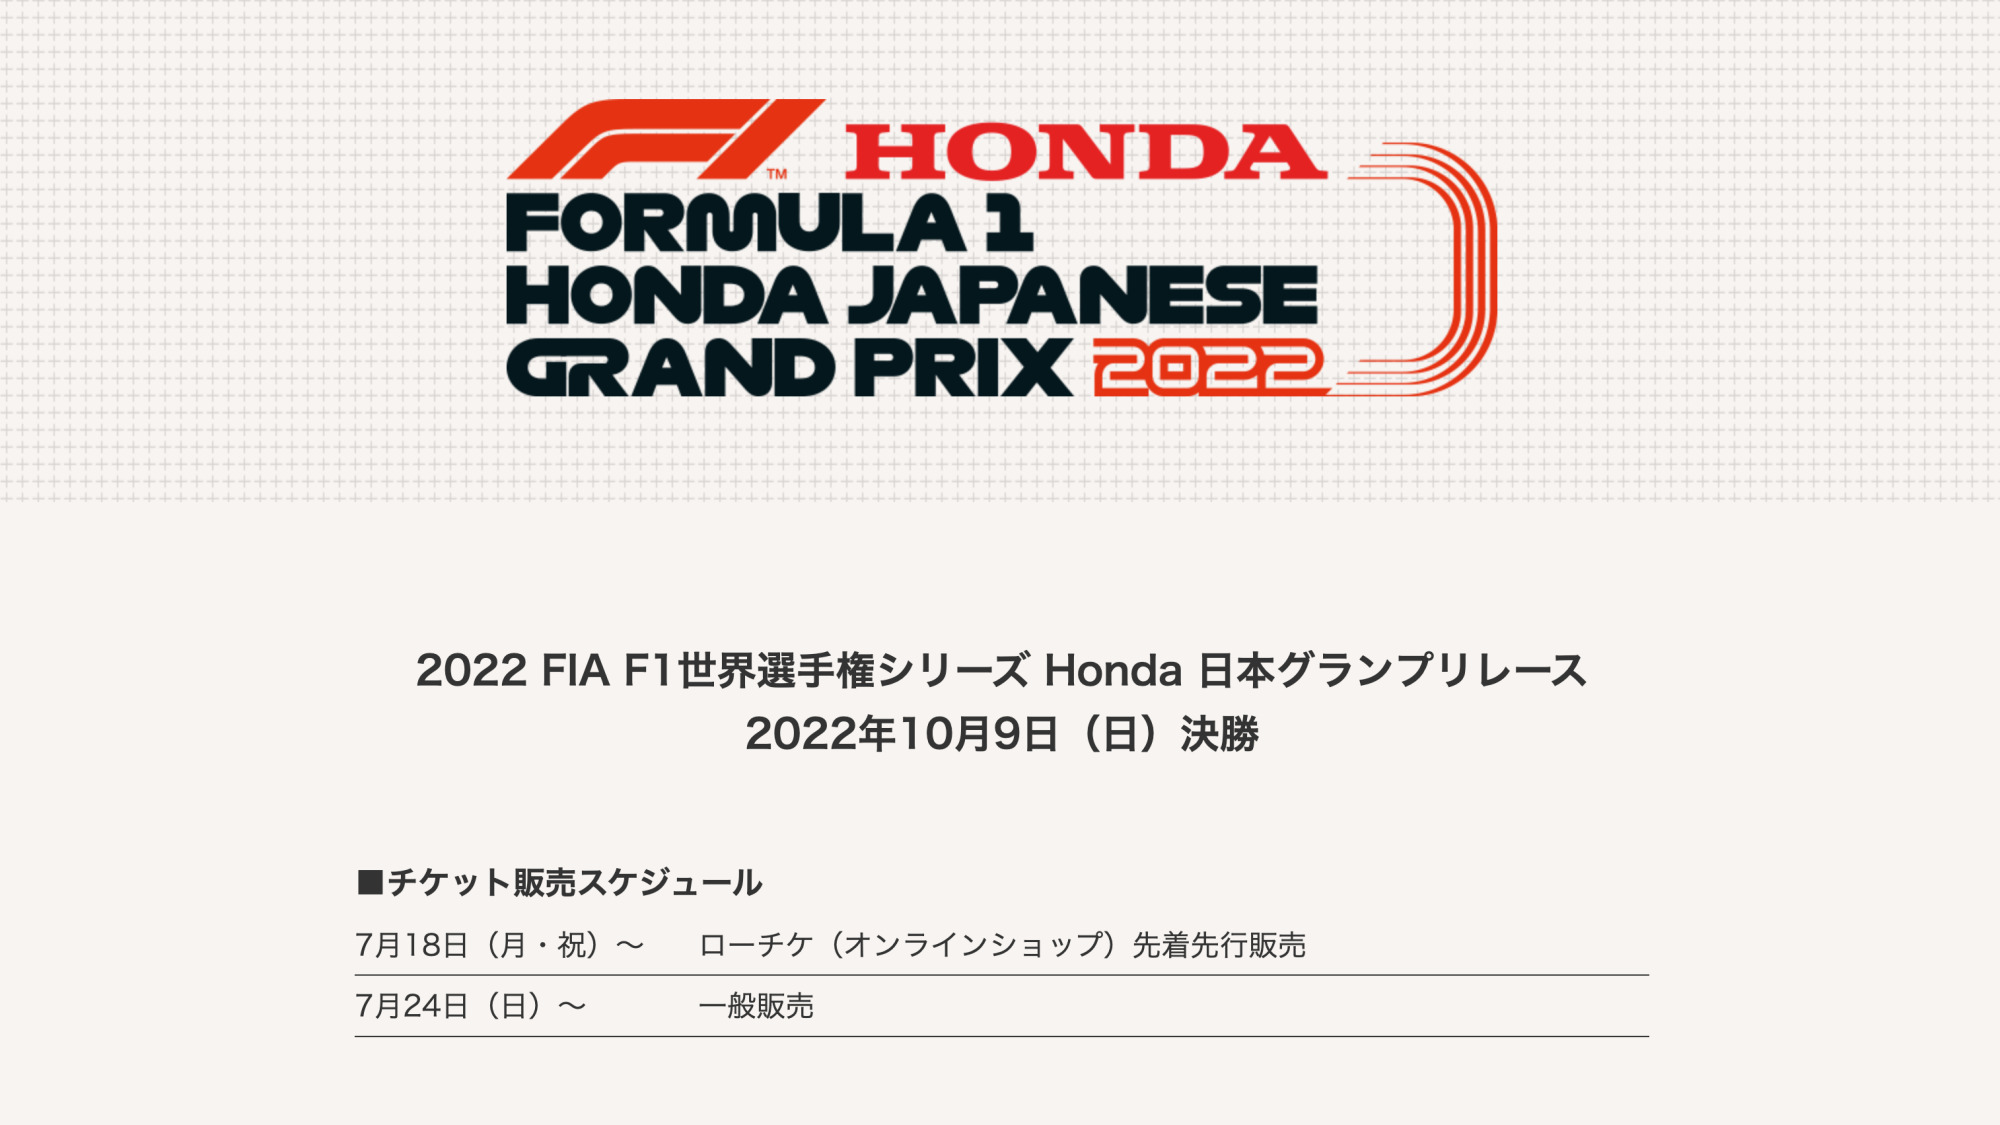 オンライン販売店舗 2022 F1 世界選手権シリーズ 日本GP モータースポーツ